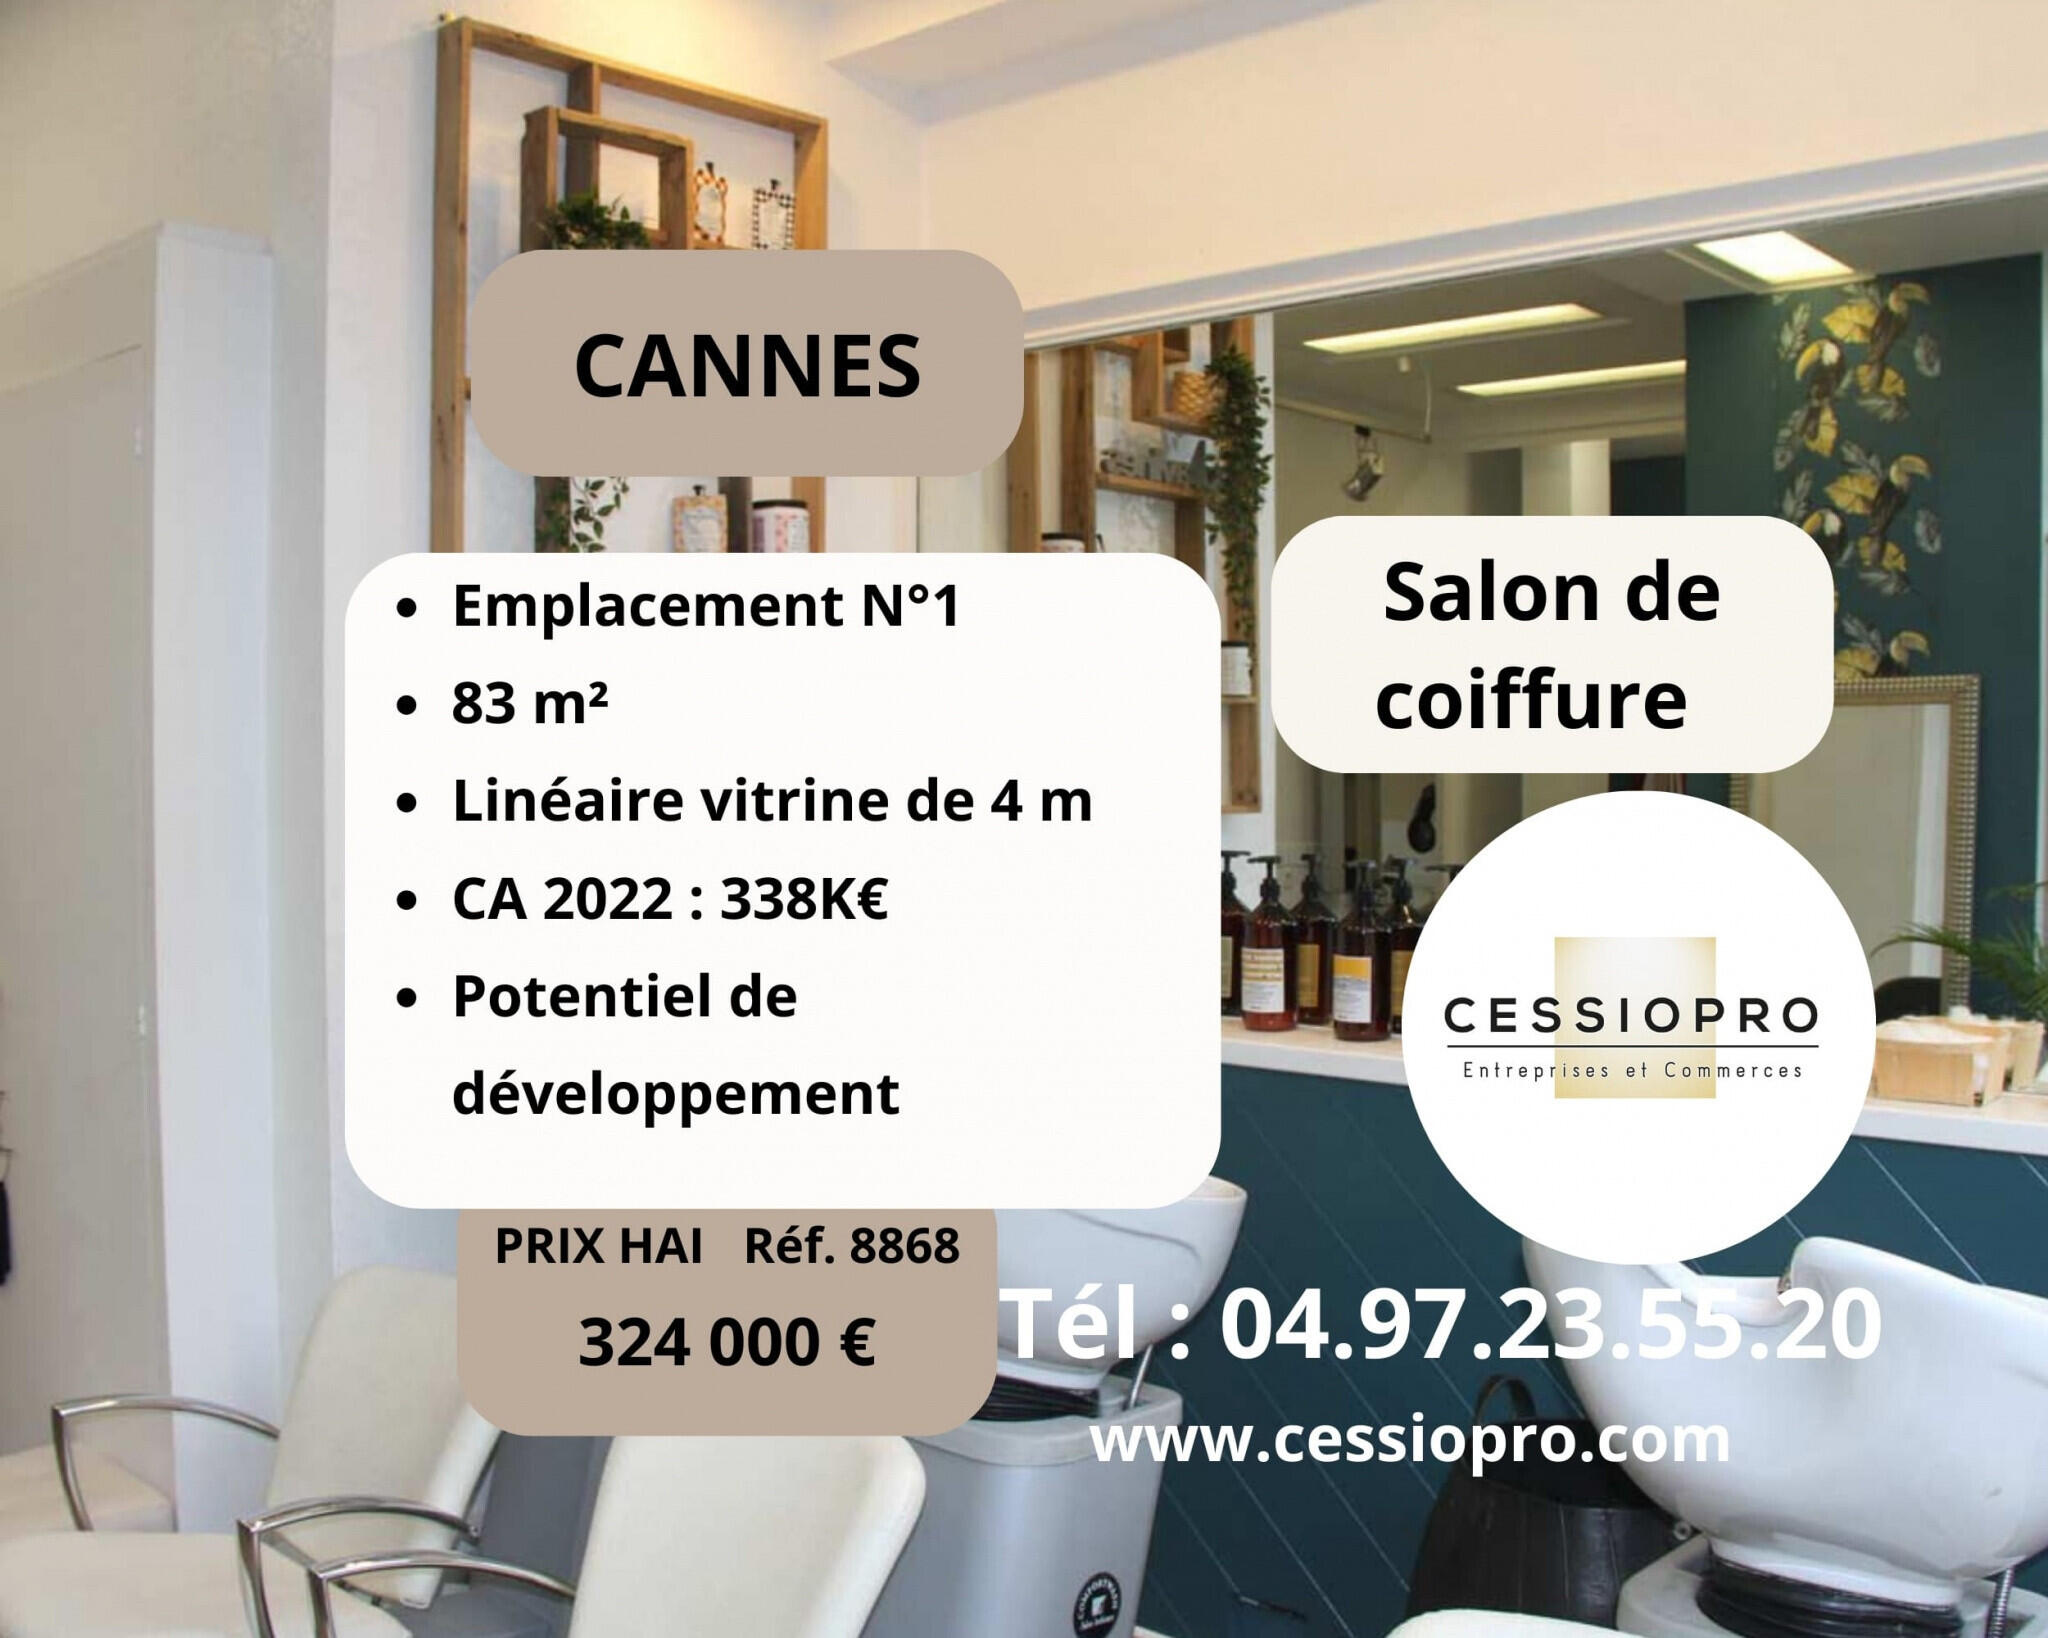 Vend salon de coiffure à Cannes emplacement N°1